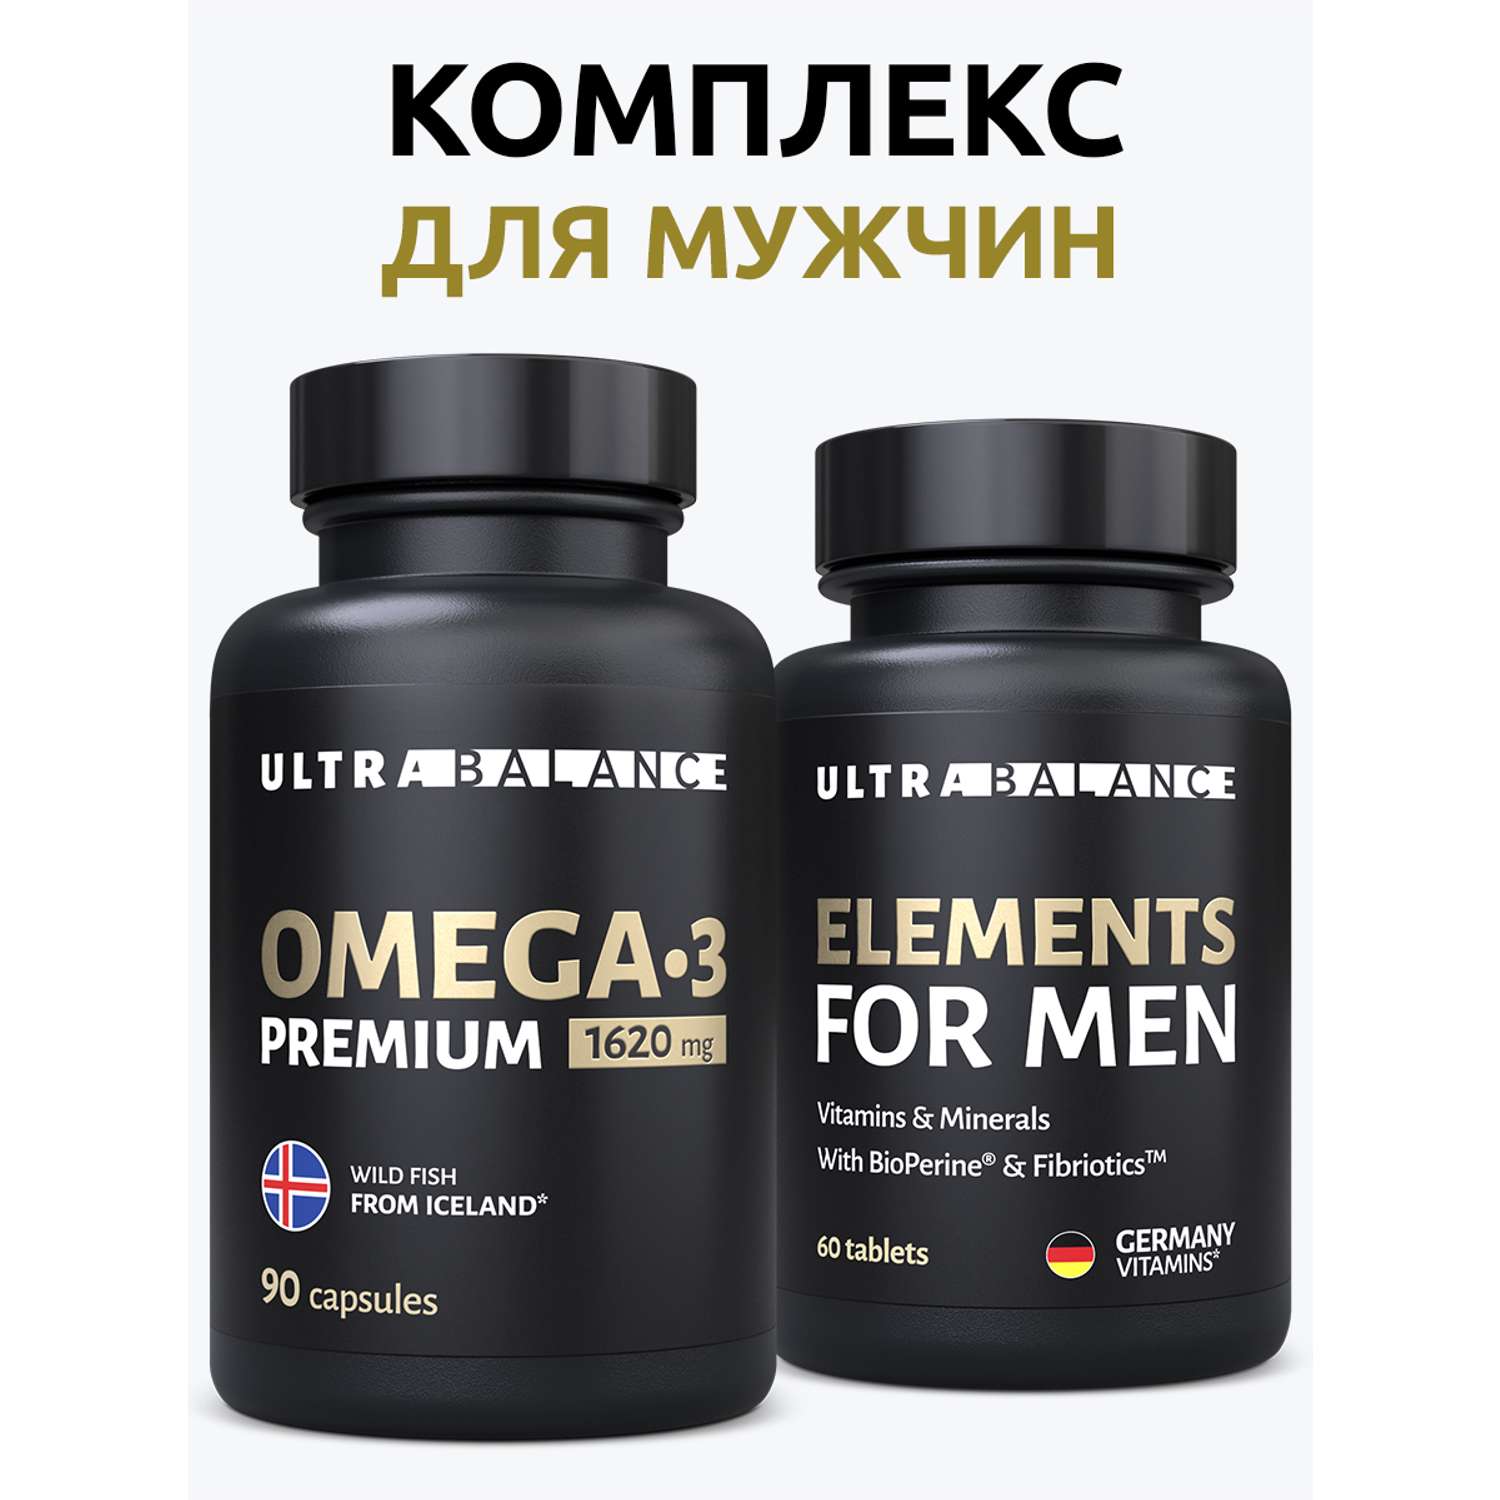 Витамины и минералы для мужчин UltraBalance Elements for men Omega 3 премиум - фото 2